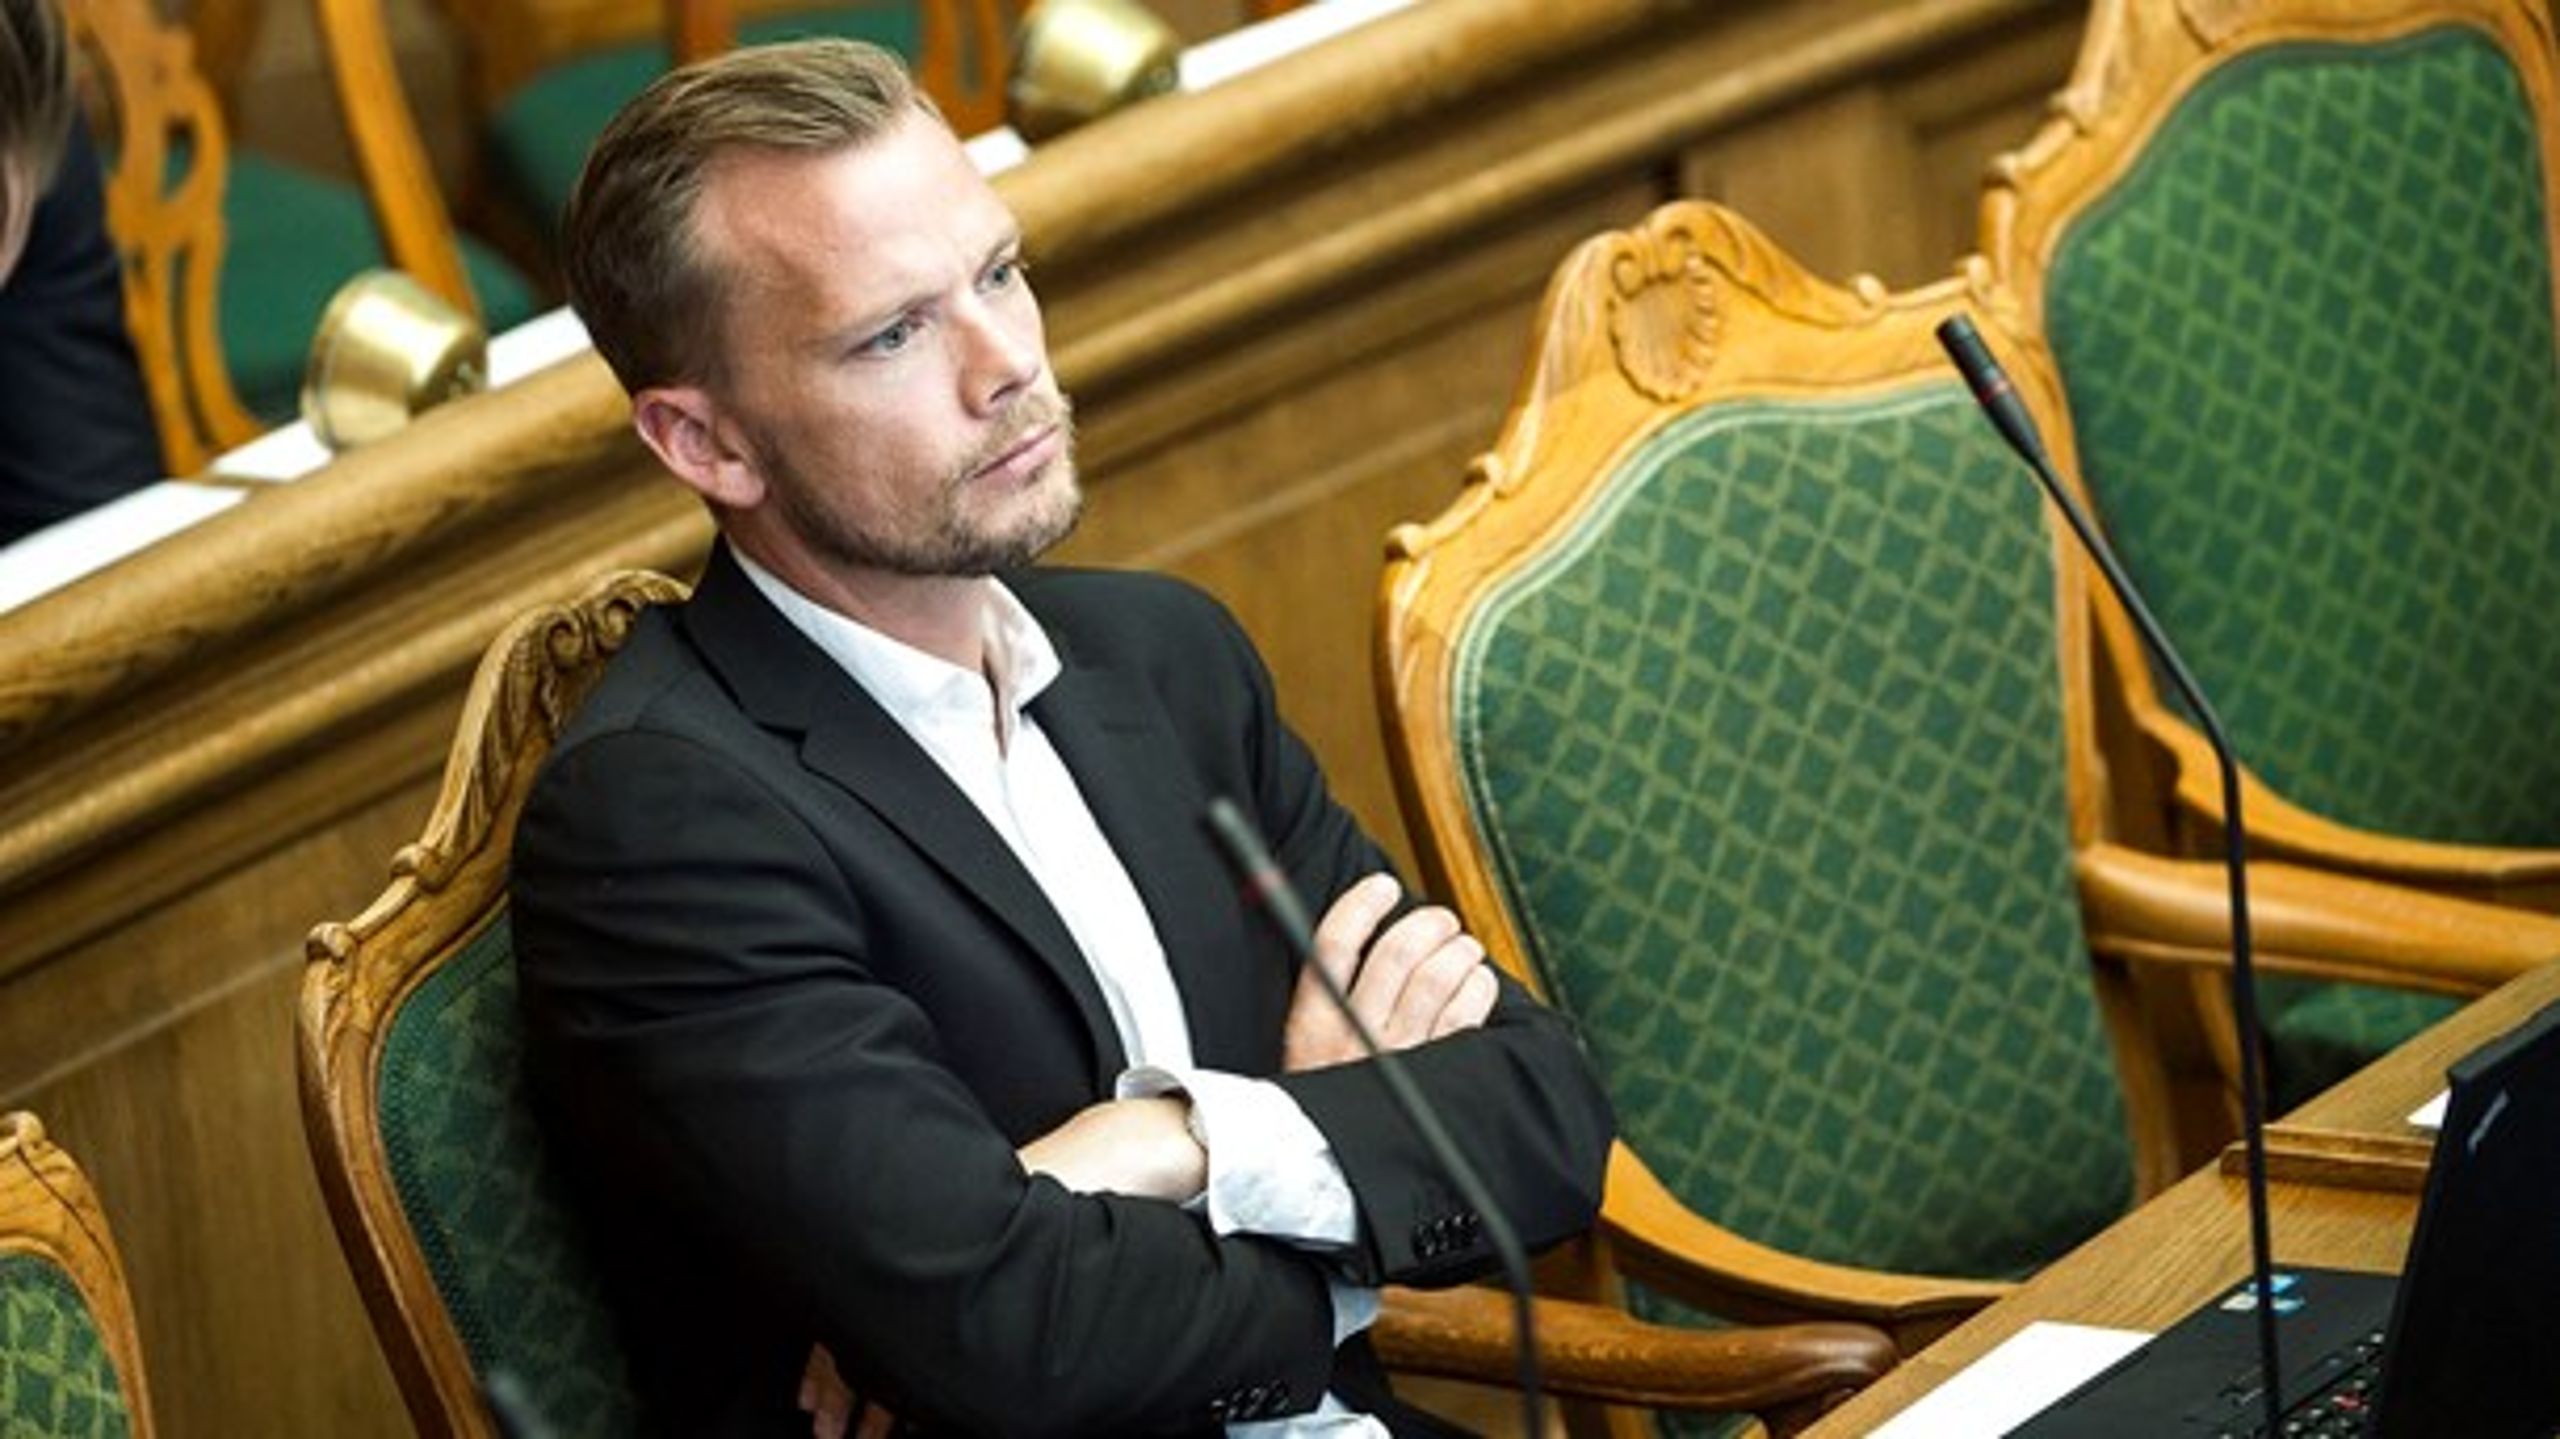 Peter Hummelgaard langer ud efter beskæftigelsesminister Troels Lund Poulsen for at hemmeligholde rapport om nedslidning under forhandlinger.